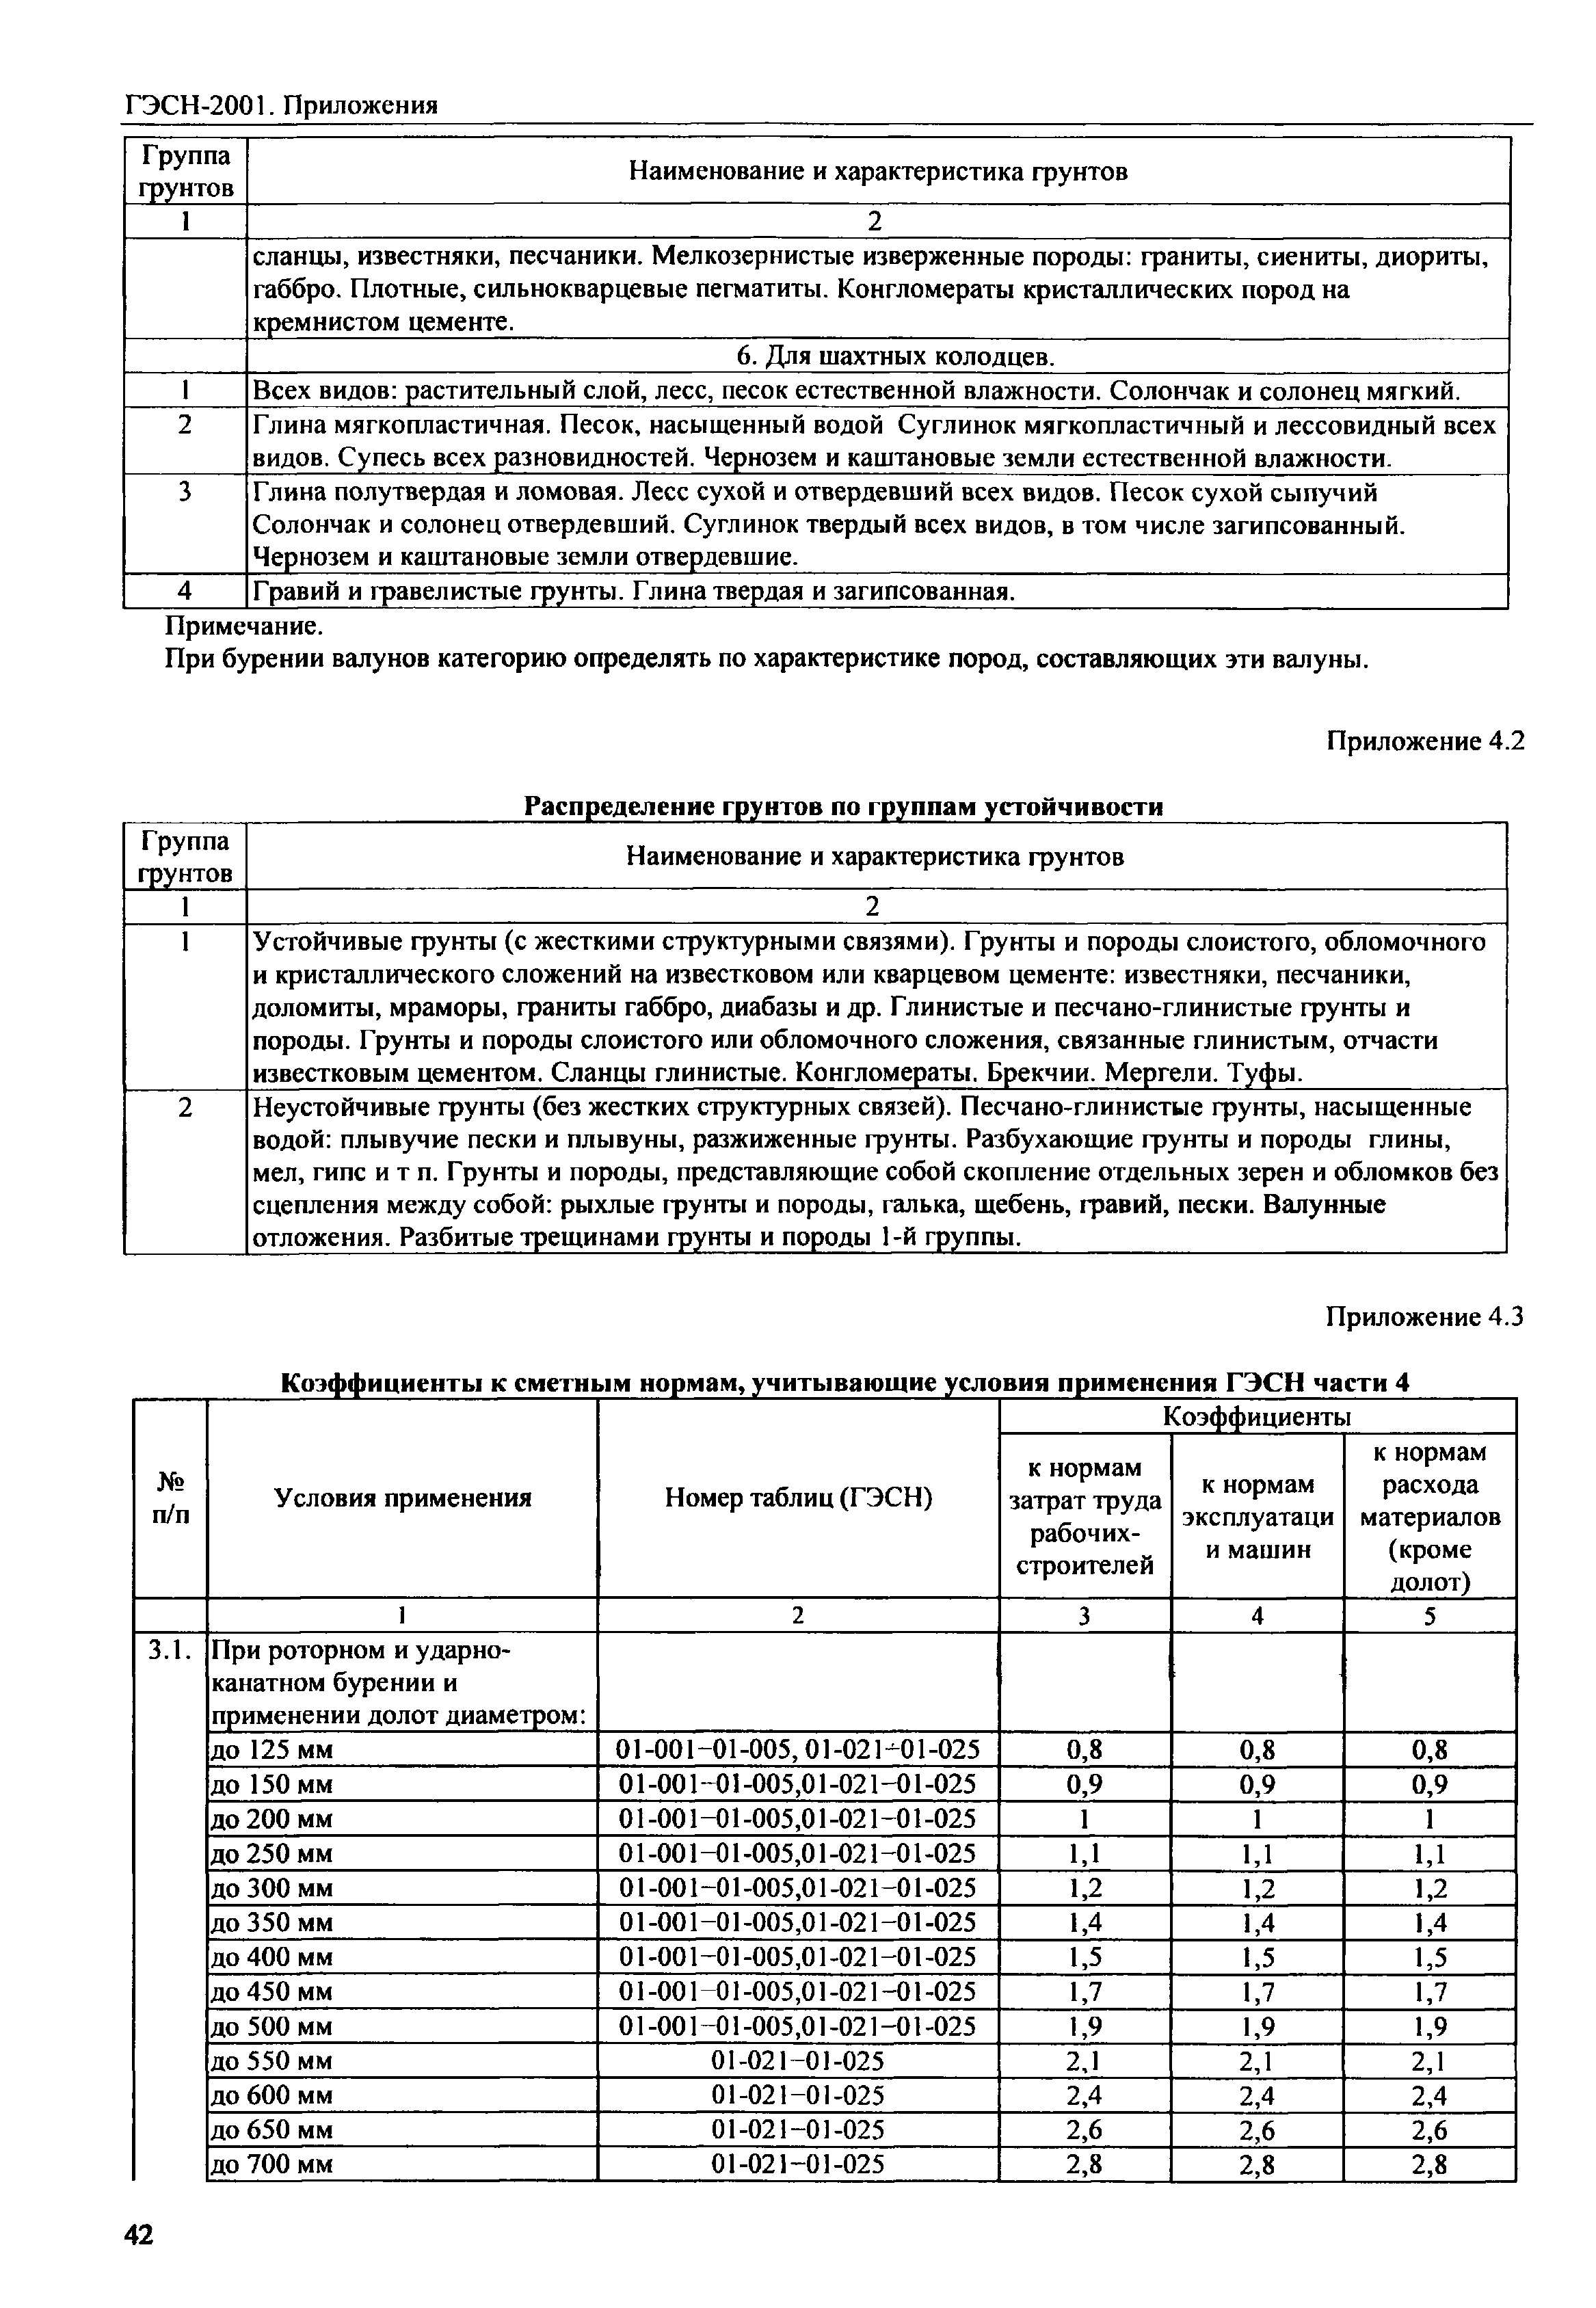 ГЭСН 81-02-Пр-2001